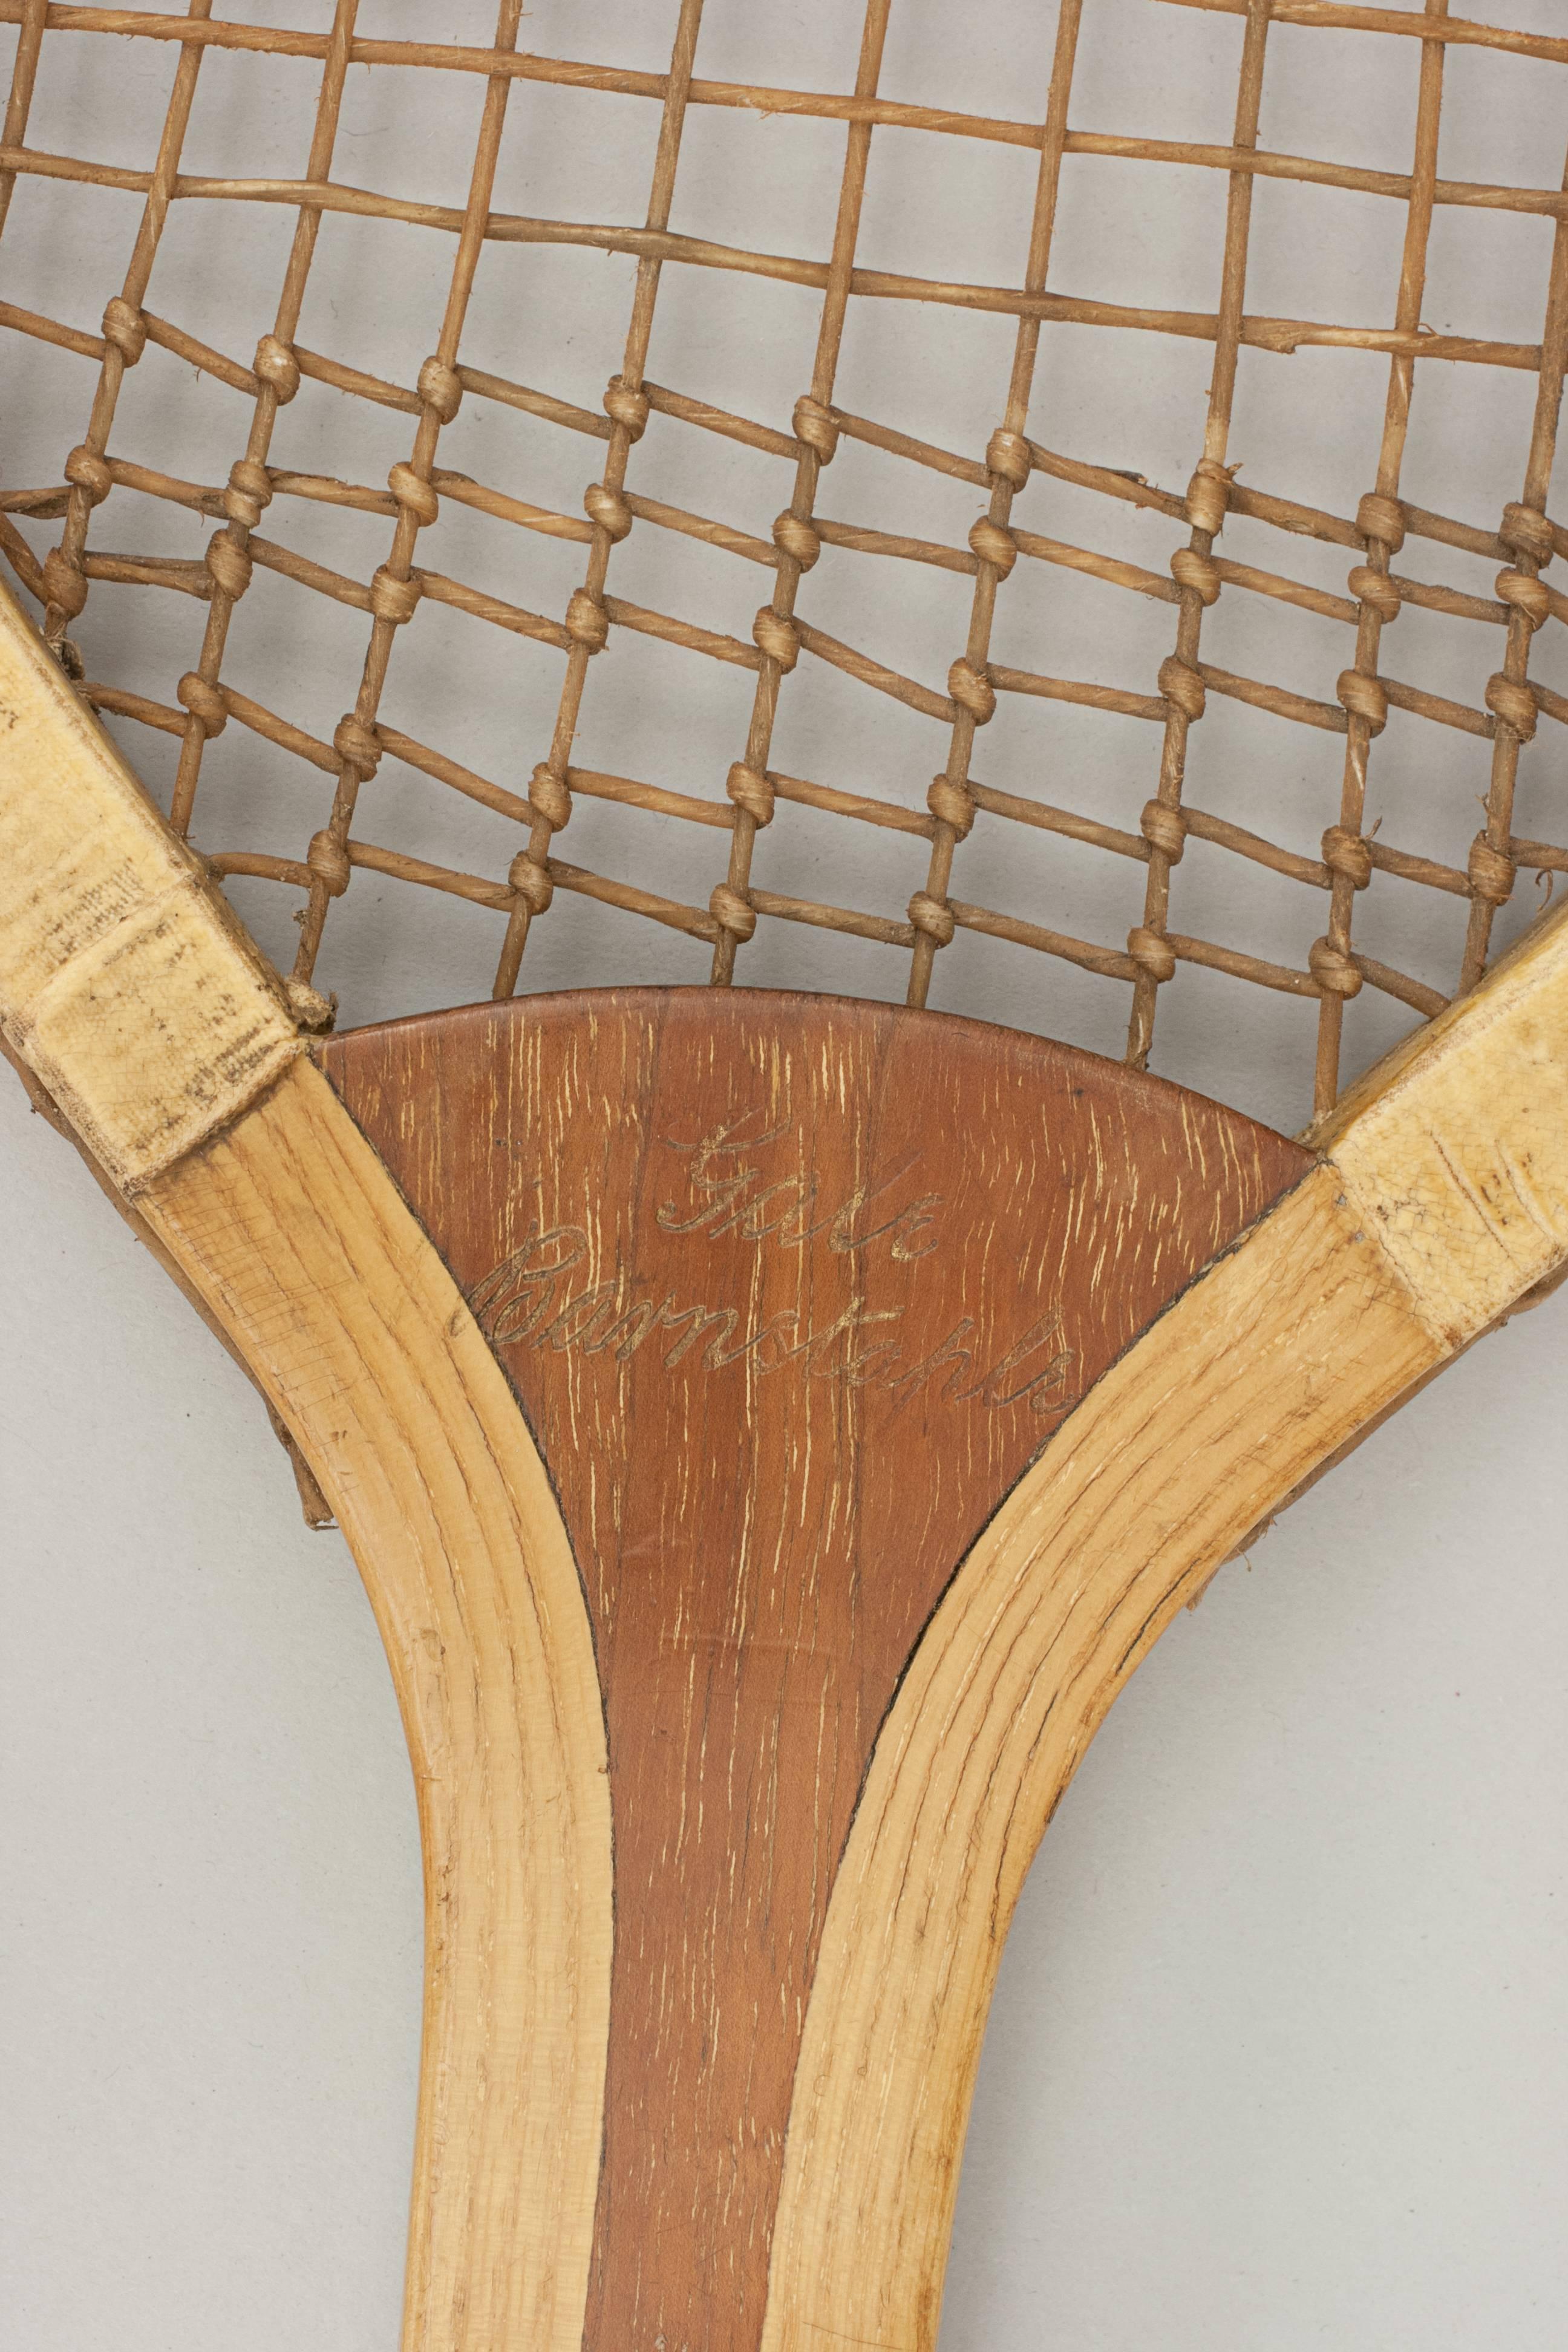 Prosser Fishtail Tennis Racket 1